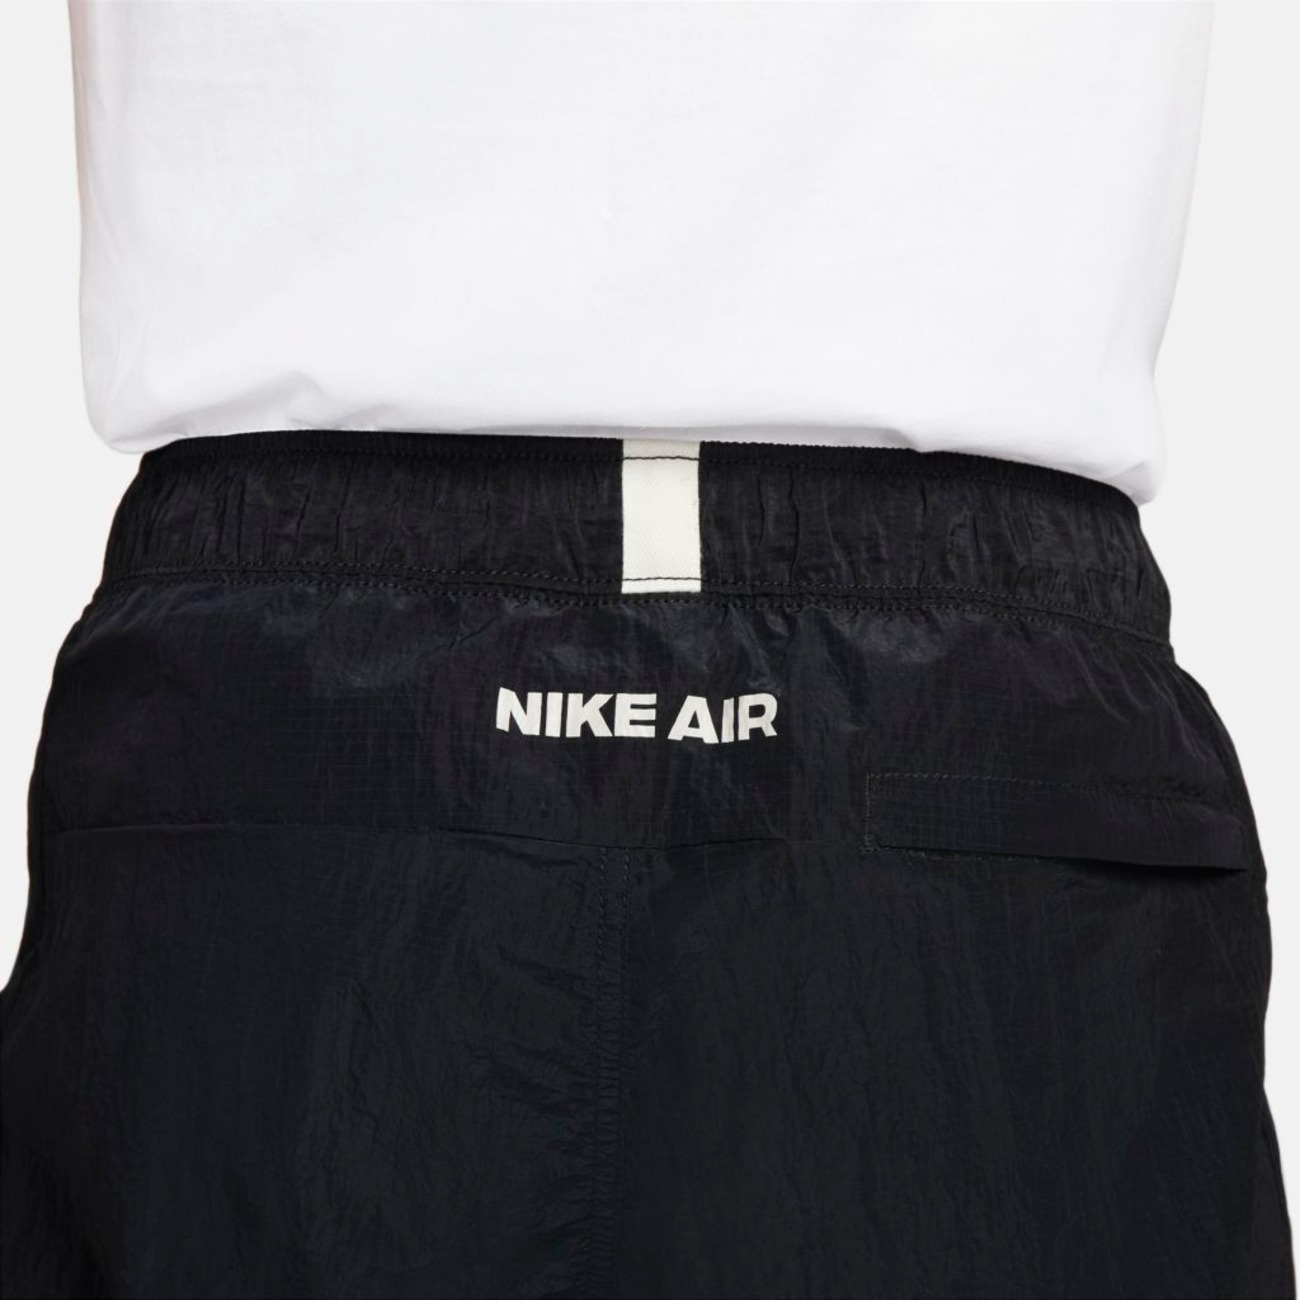 Calça Nike Air Masculina - Foto 6